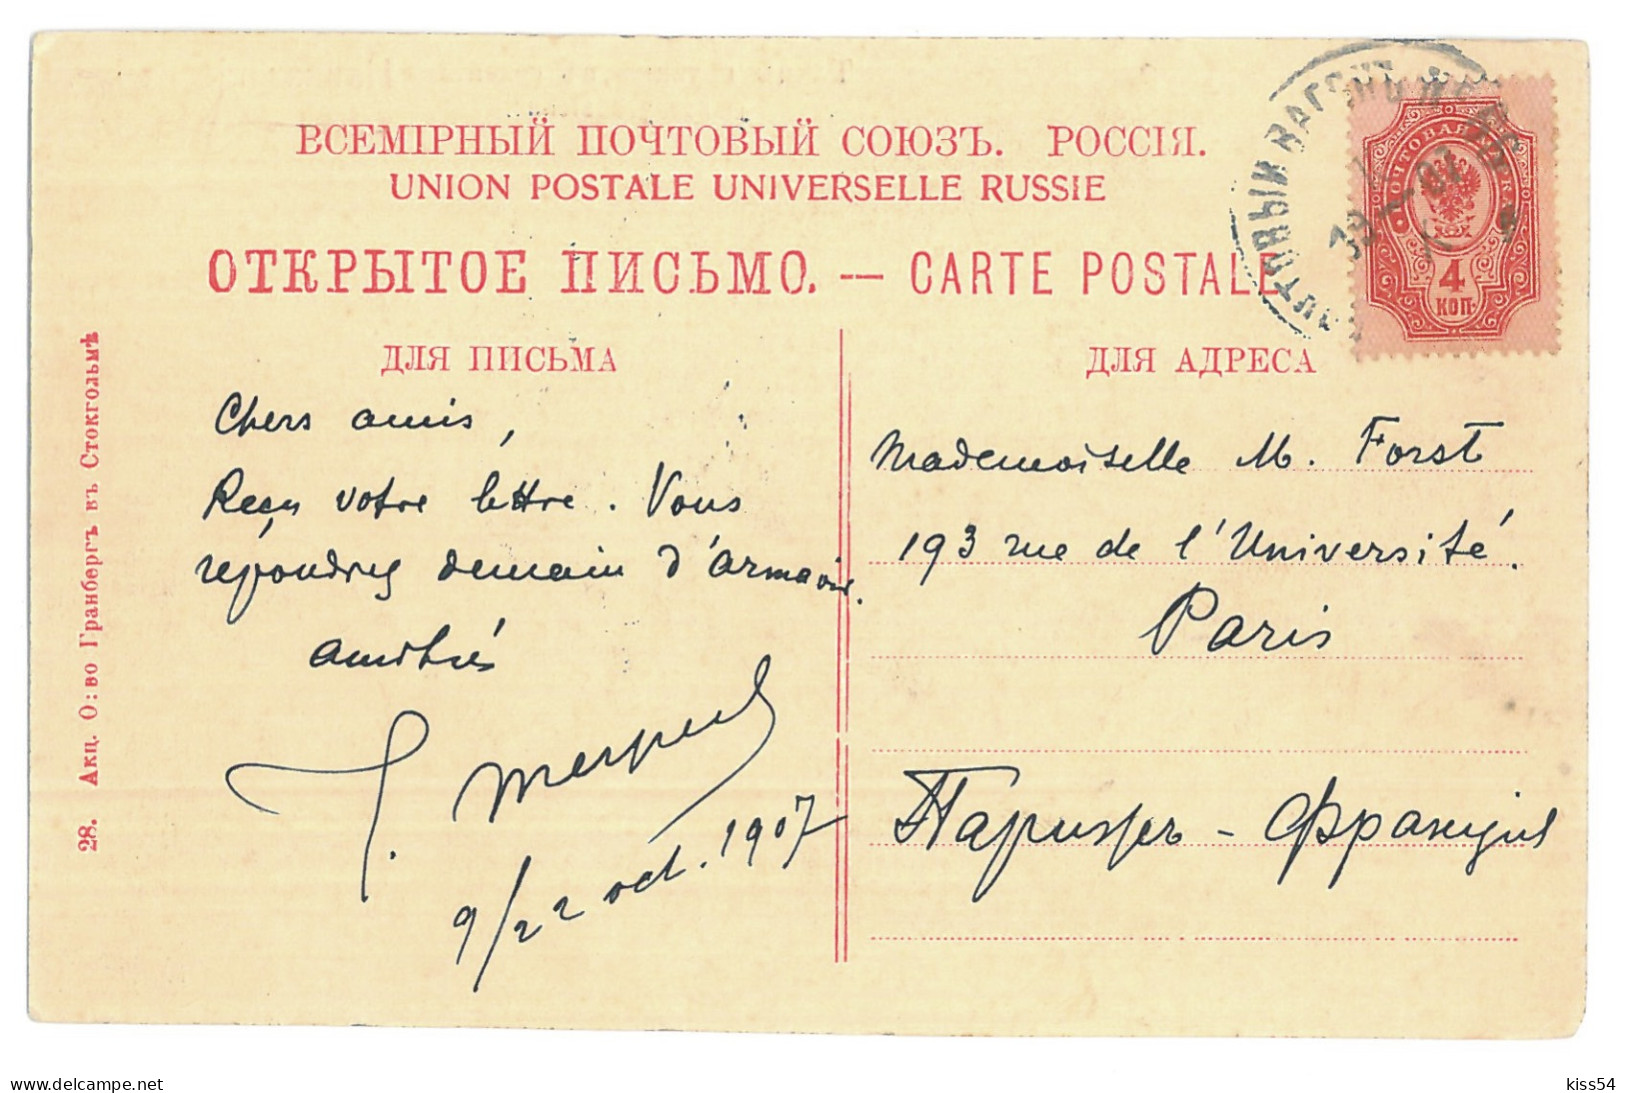 RUS 998 - 15453 ETHNICS Georgians In The Caucasus, Russia - Old Postcard - Used - 1907 - Russland